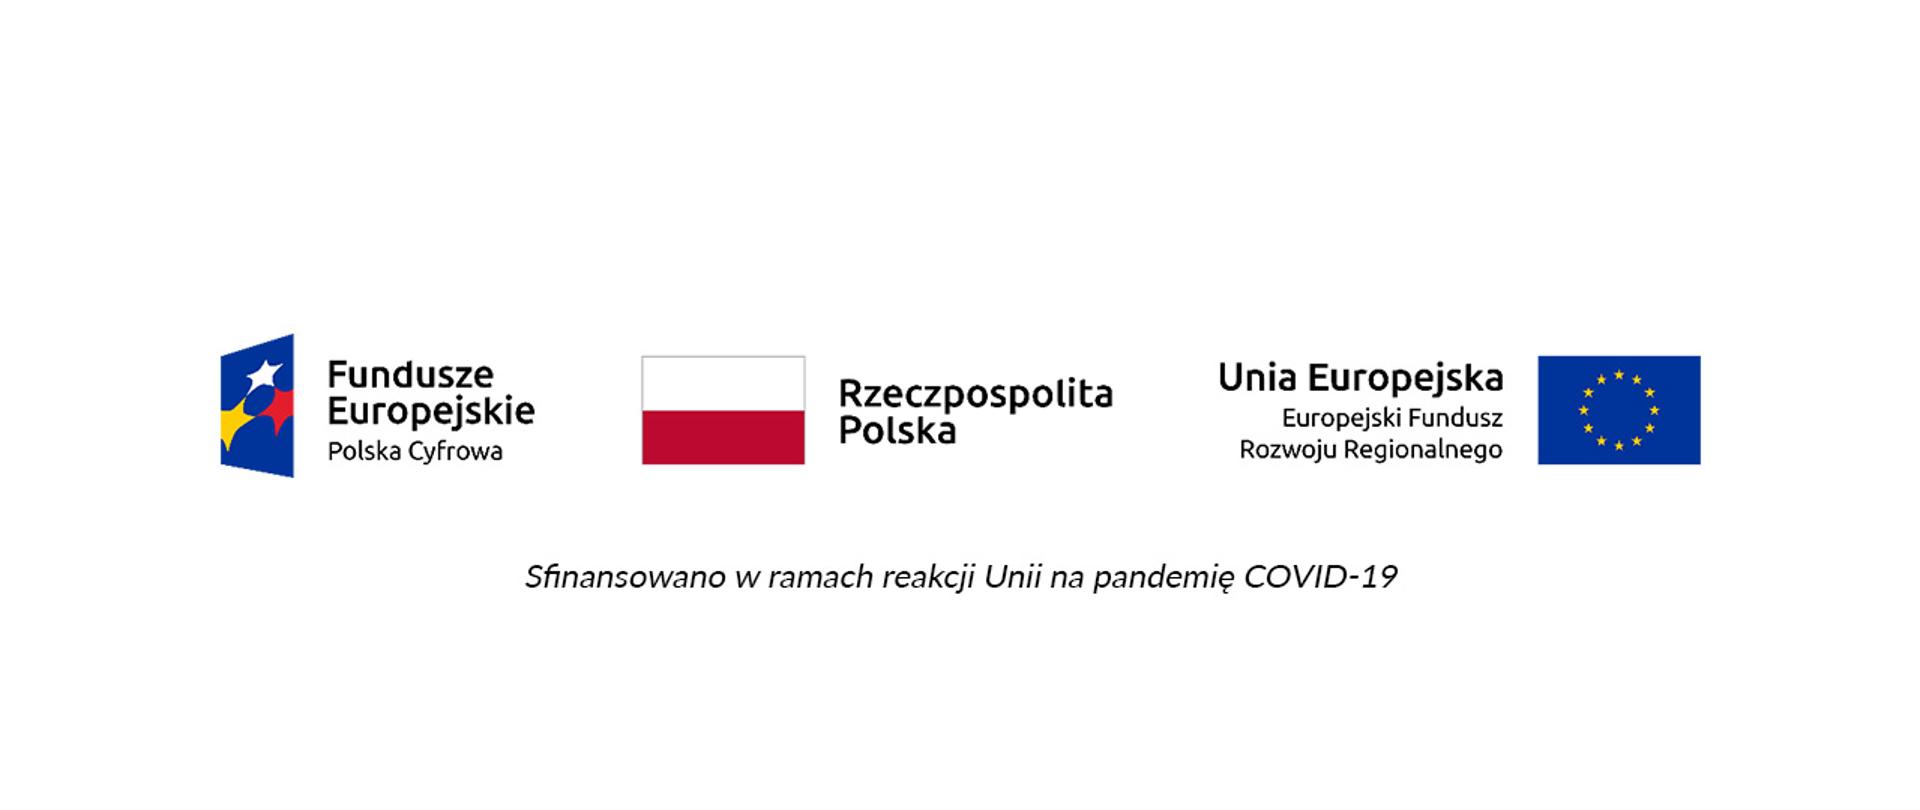 Logo Funduszy Europejskich Polski Cyfrowej, logo Rzeczypospolitej Polskiej, logo Unii Europejskiej Europejskiego Funduszu Rozwoju Regionalnego. Po spodem napis: Sfinansowano w ramach reakcji Unii na pandemię COVID-19.